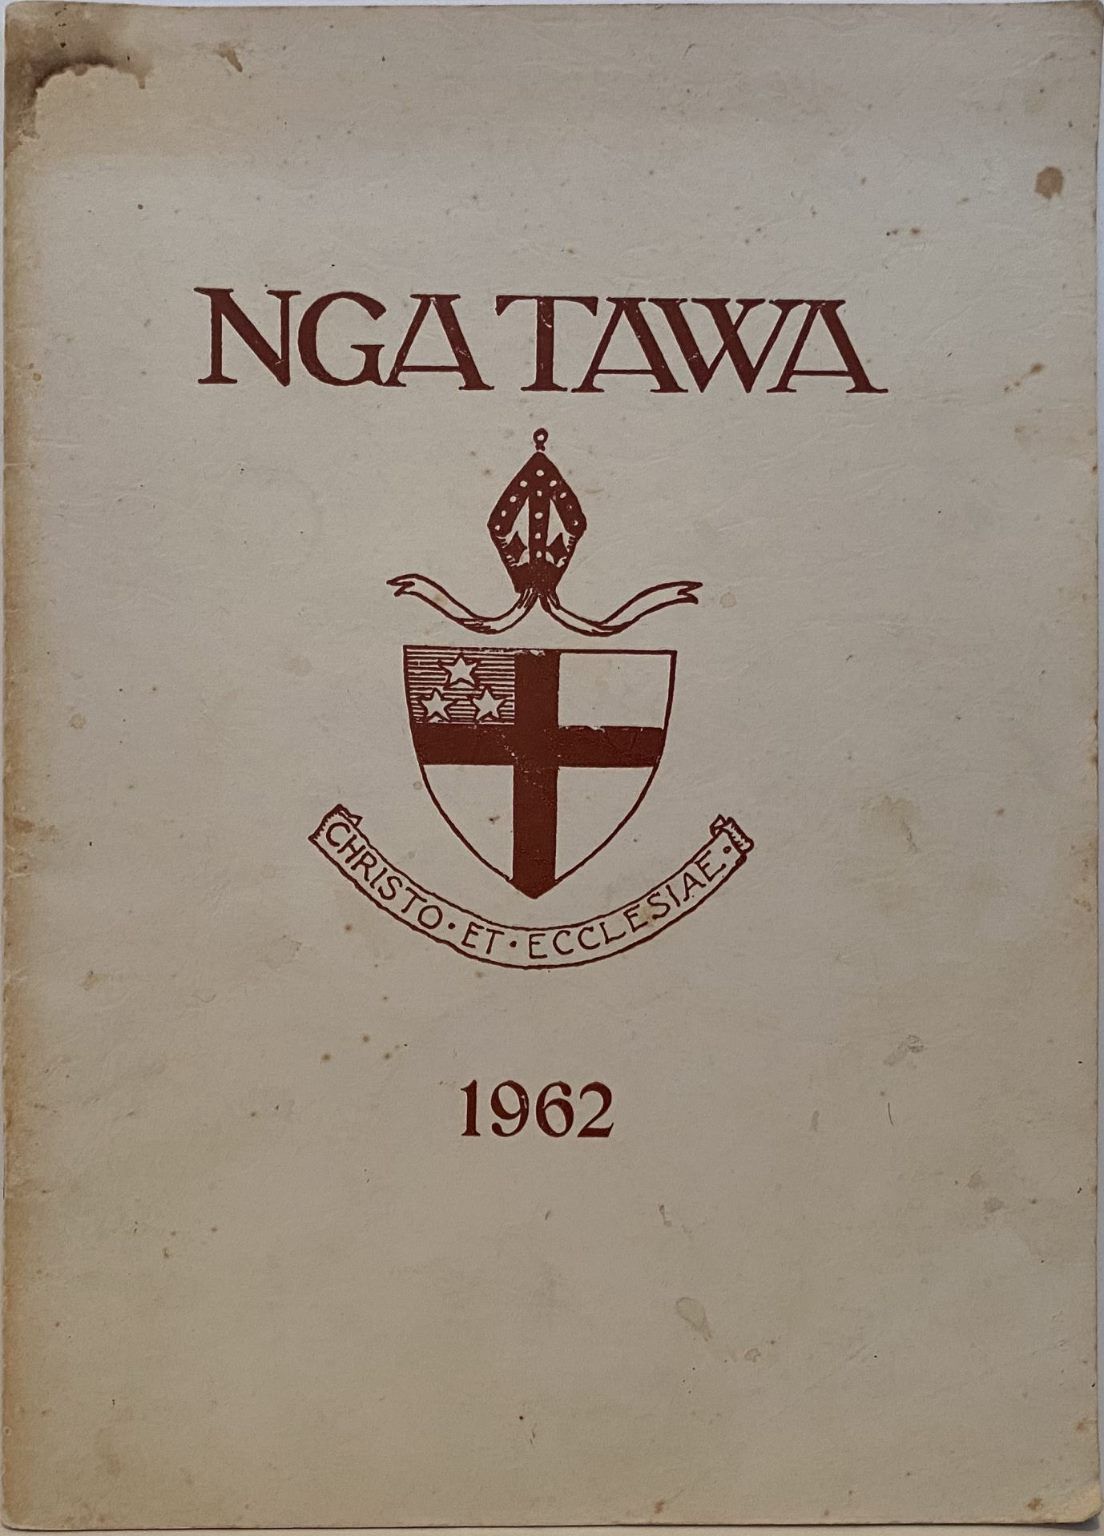 NGA TAWA: The Wellington Diocesan School for Girls